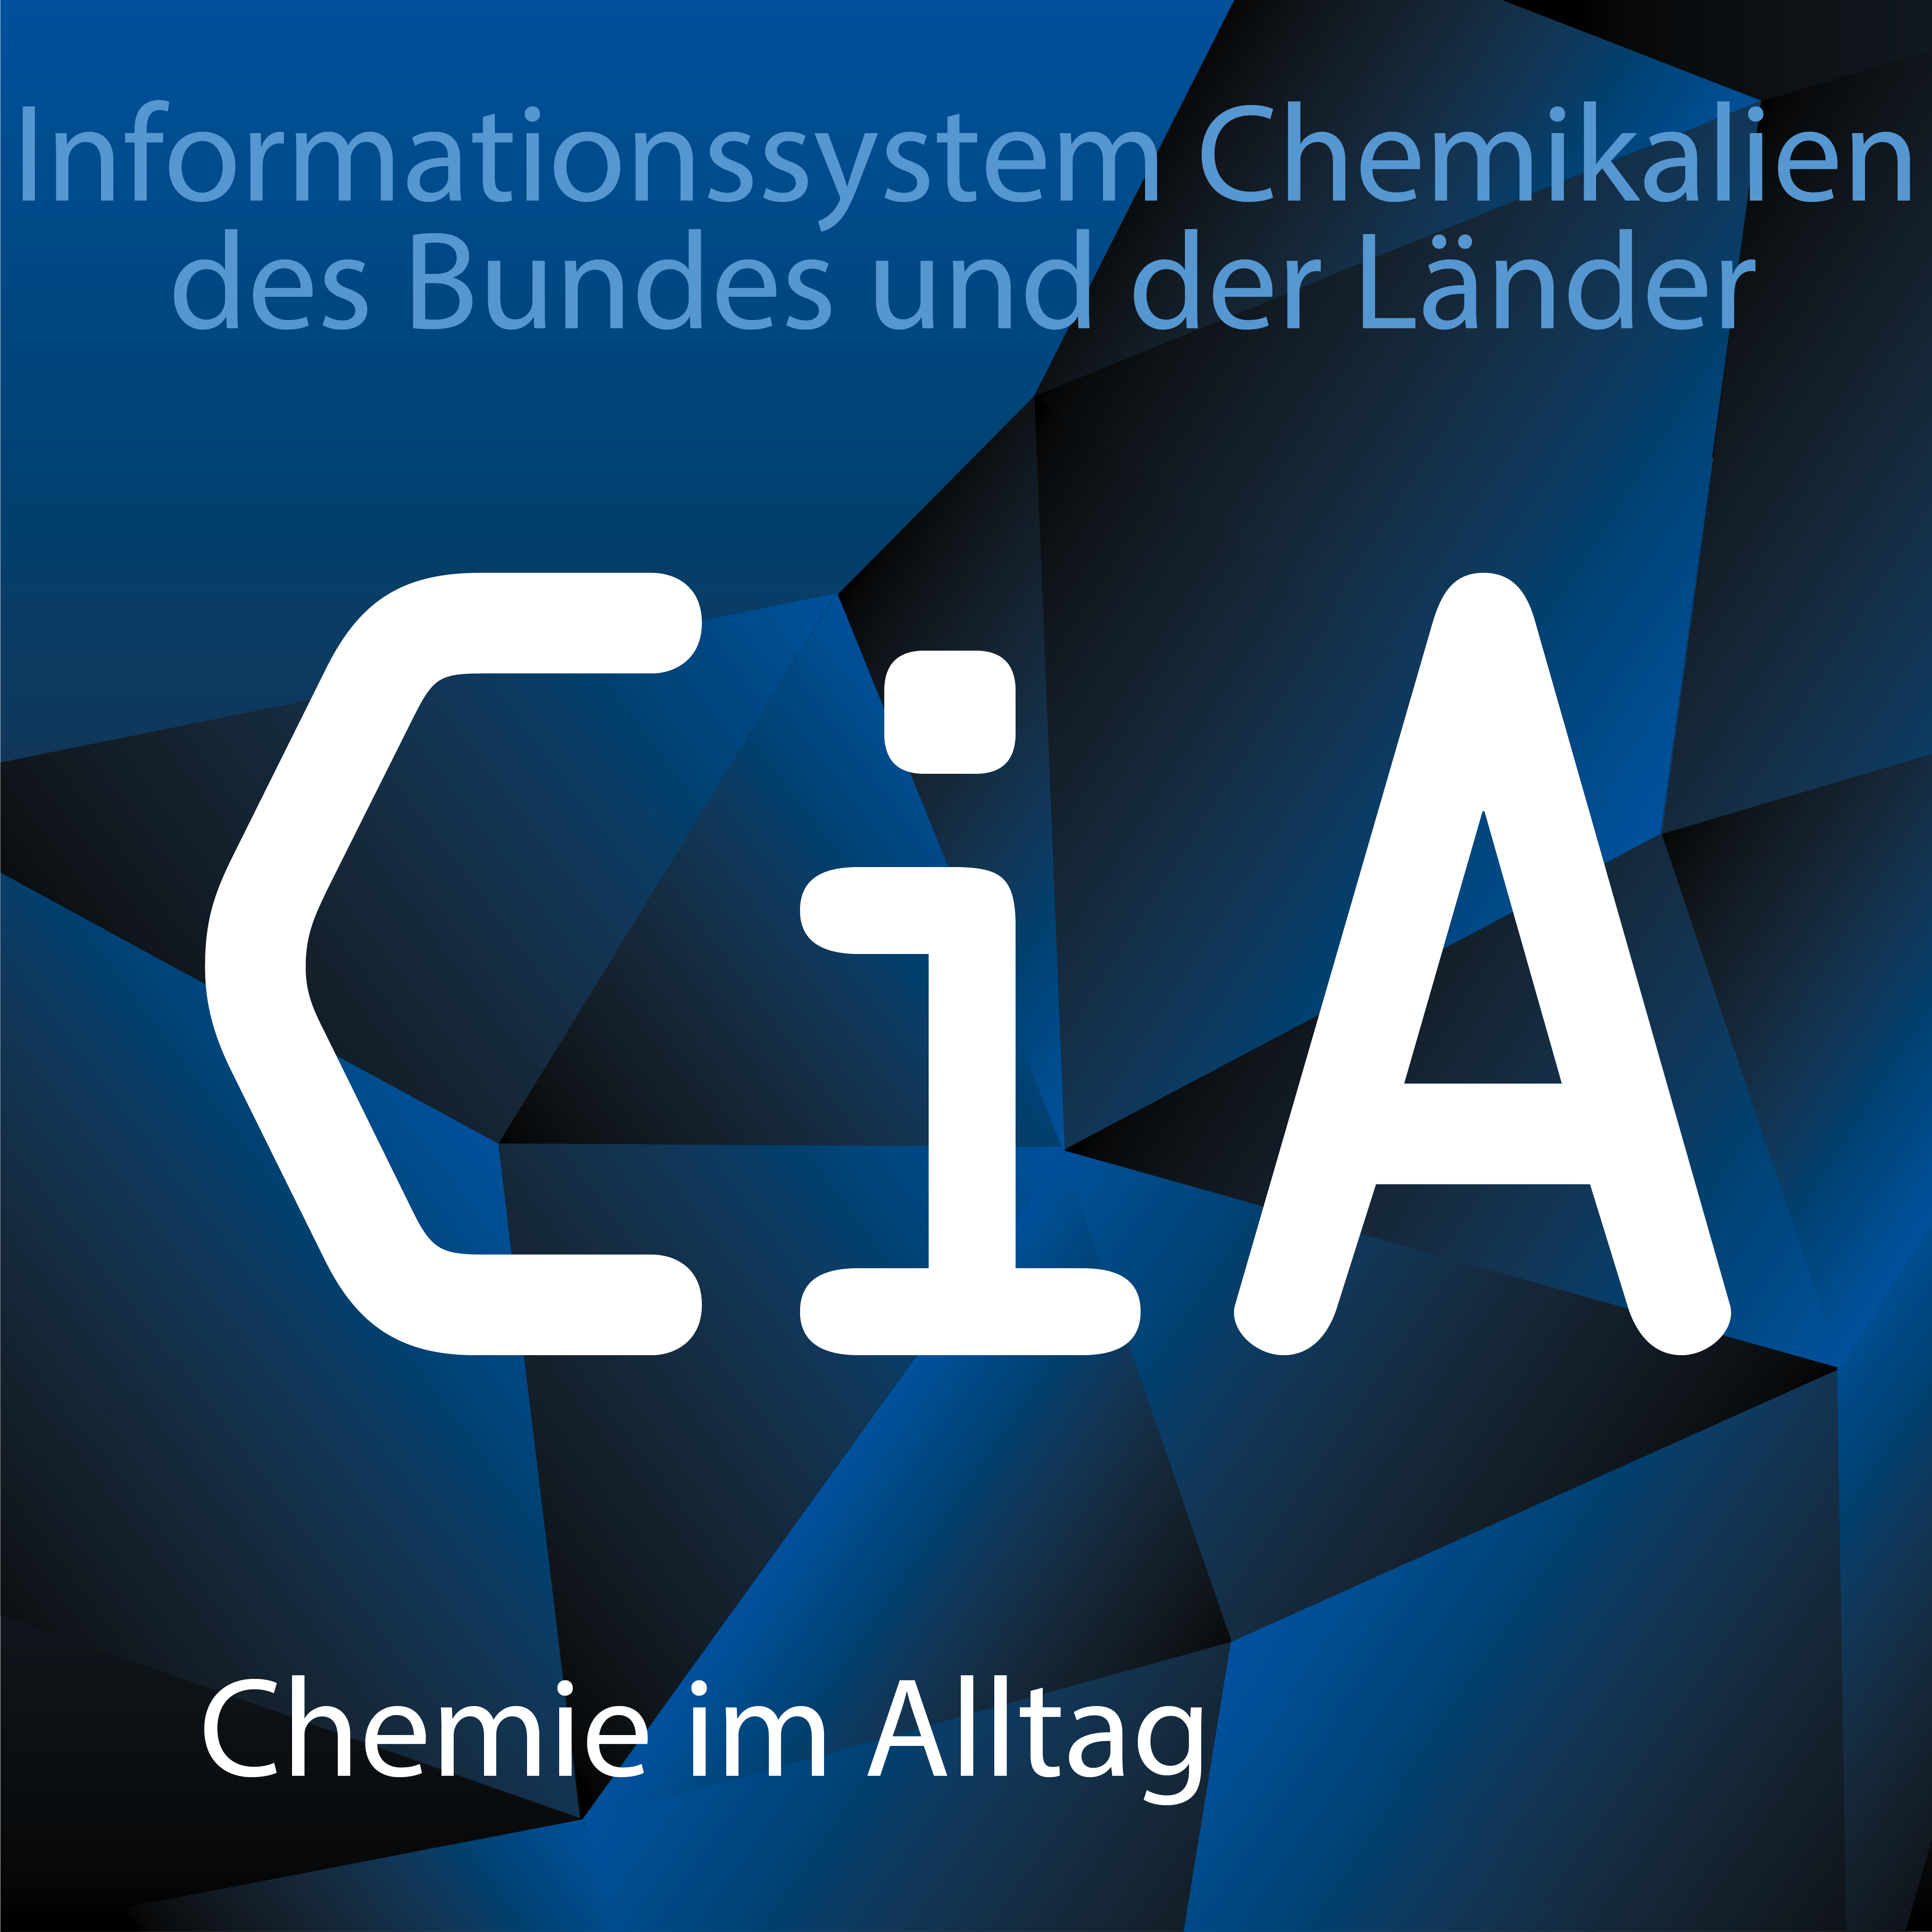 Die drei Logos von ChemInfo: ChI in grün für die Online-Version, CiA in blau für die App Chemie im Alltag und GSA in orange für die Gefahrstoffschnellauskunft